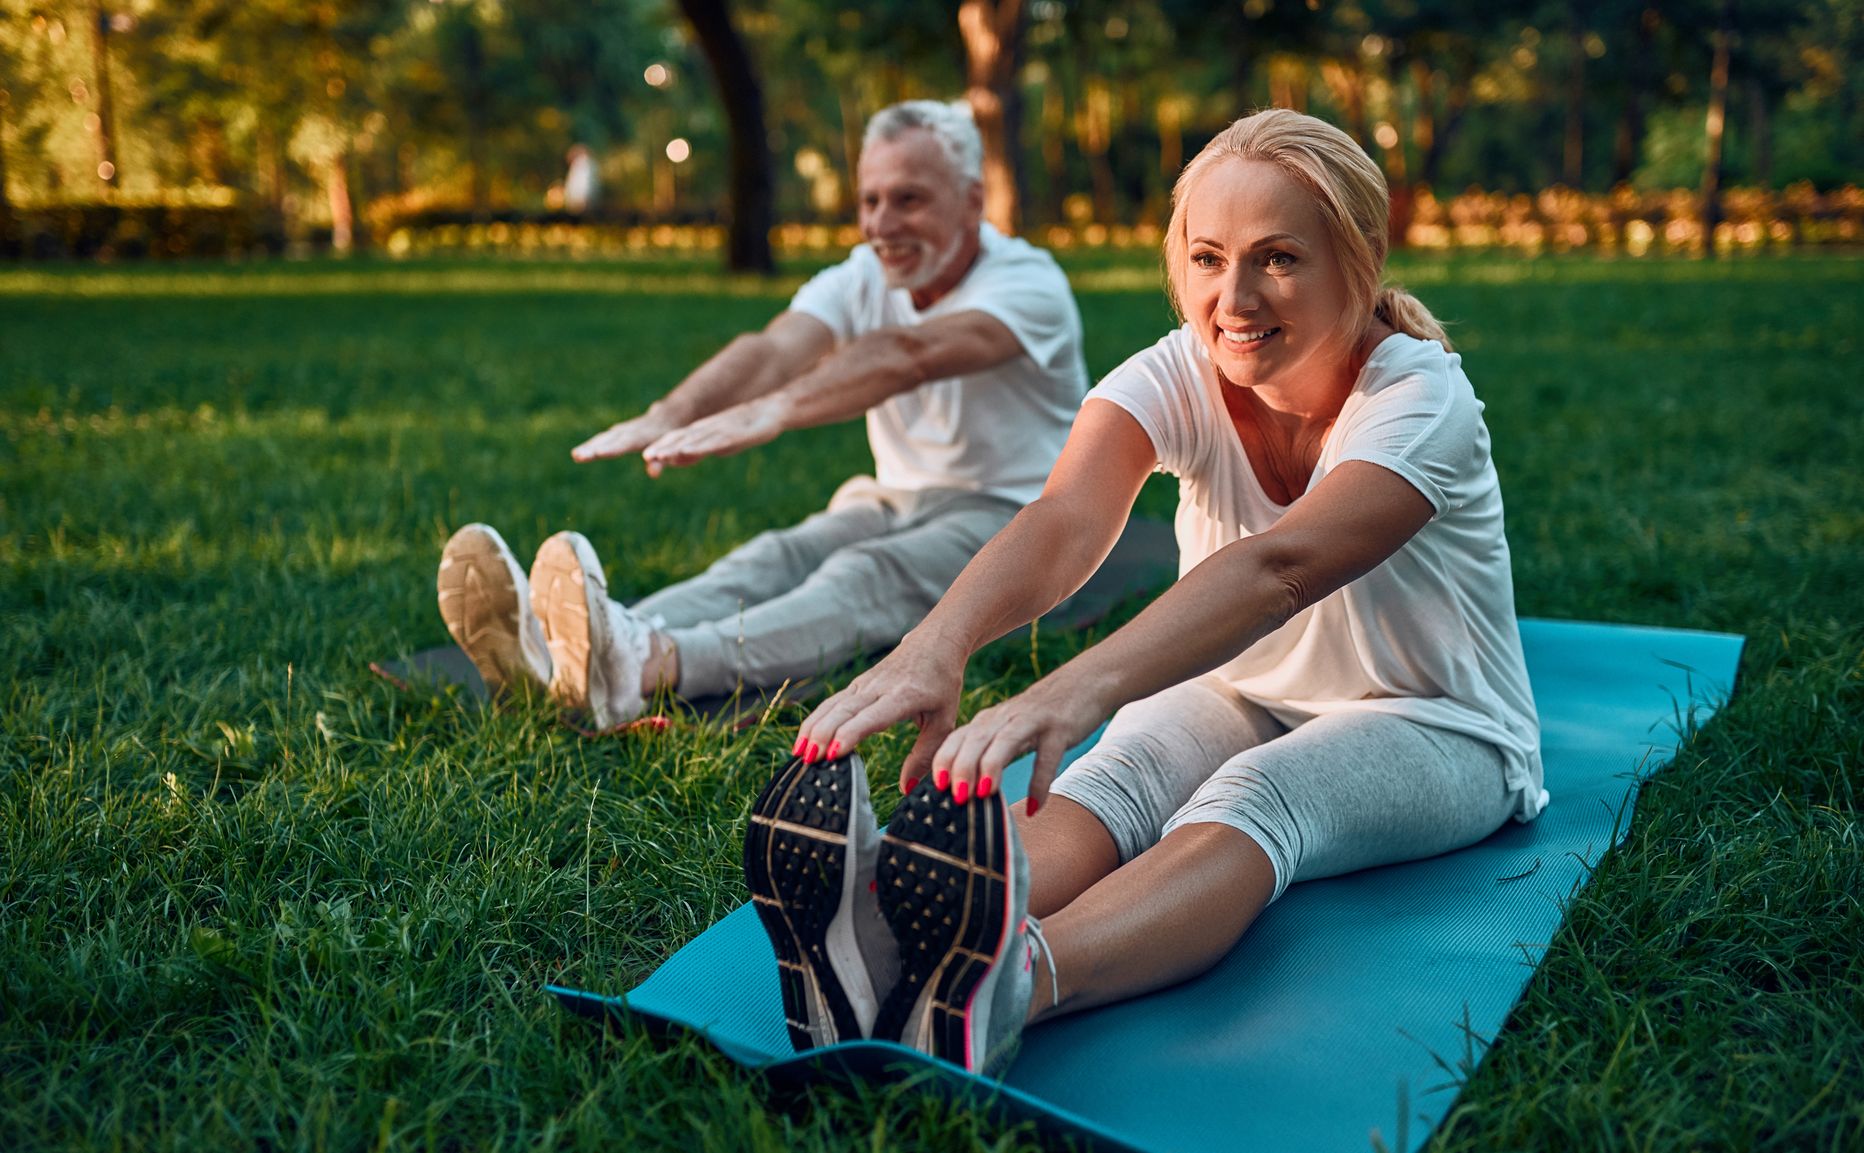 Igasuguse liikumise ja treenimise lõpetamine toob kaasa lihasjõu ja vastupidavuse languse, liigeseliikuvuse vähenemise ja tasakaalu halvenemise.